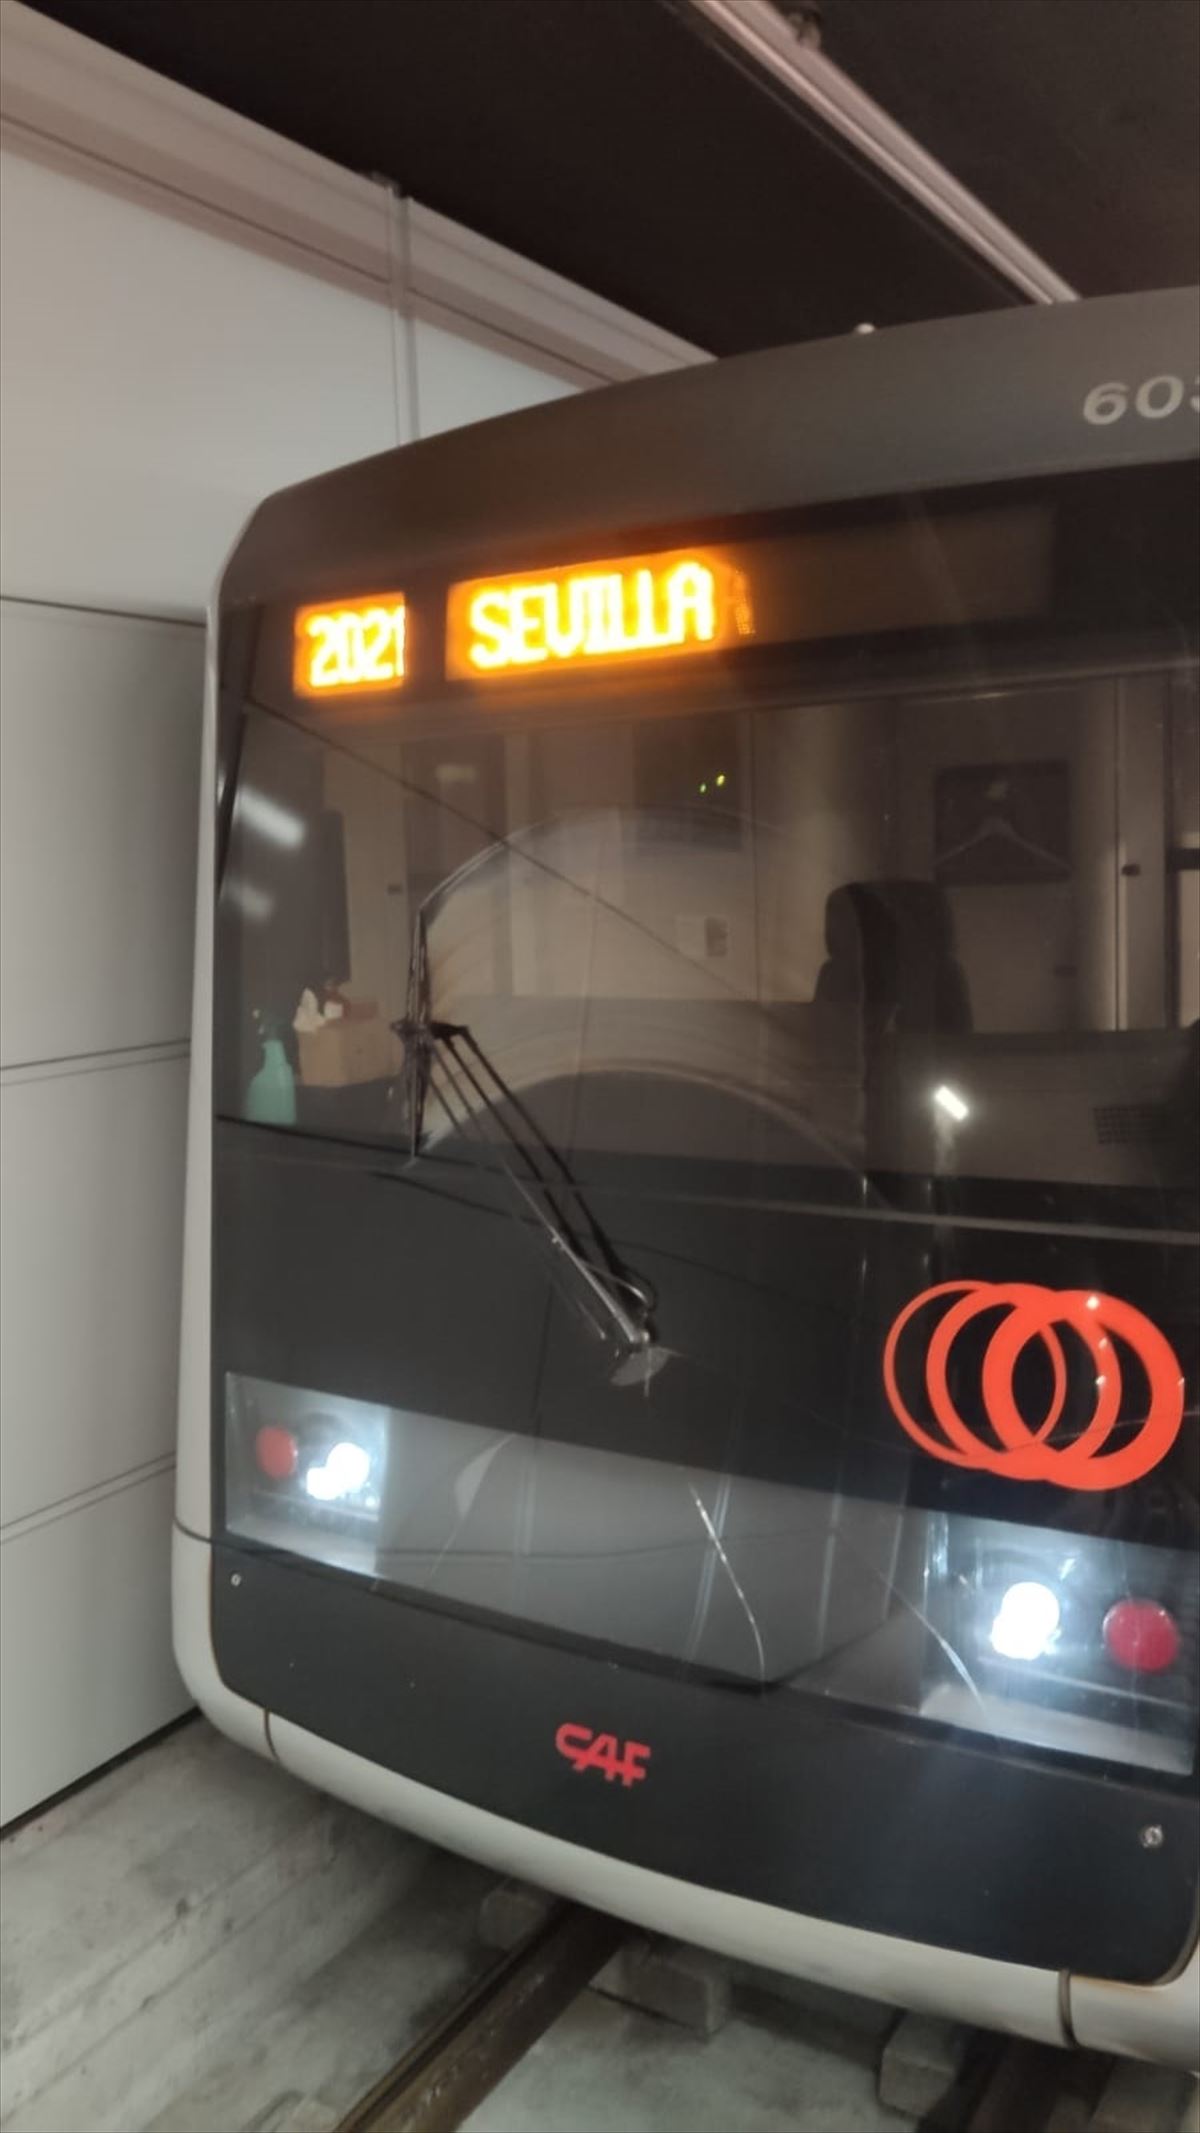 Sevillara omen doan Metro Bilbaoren tren bat